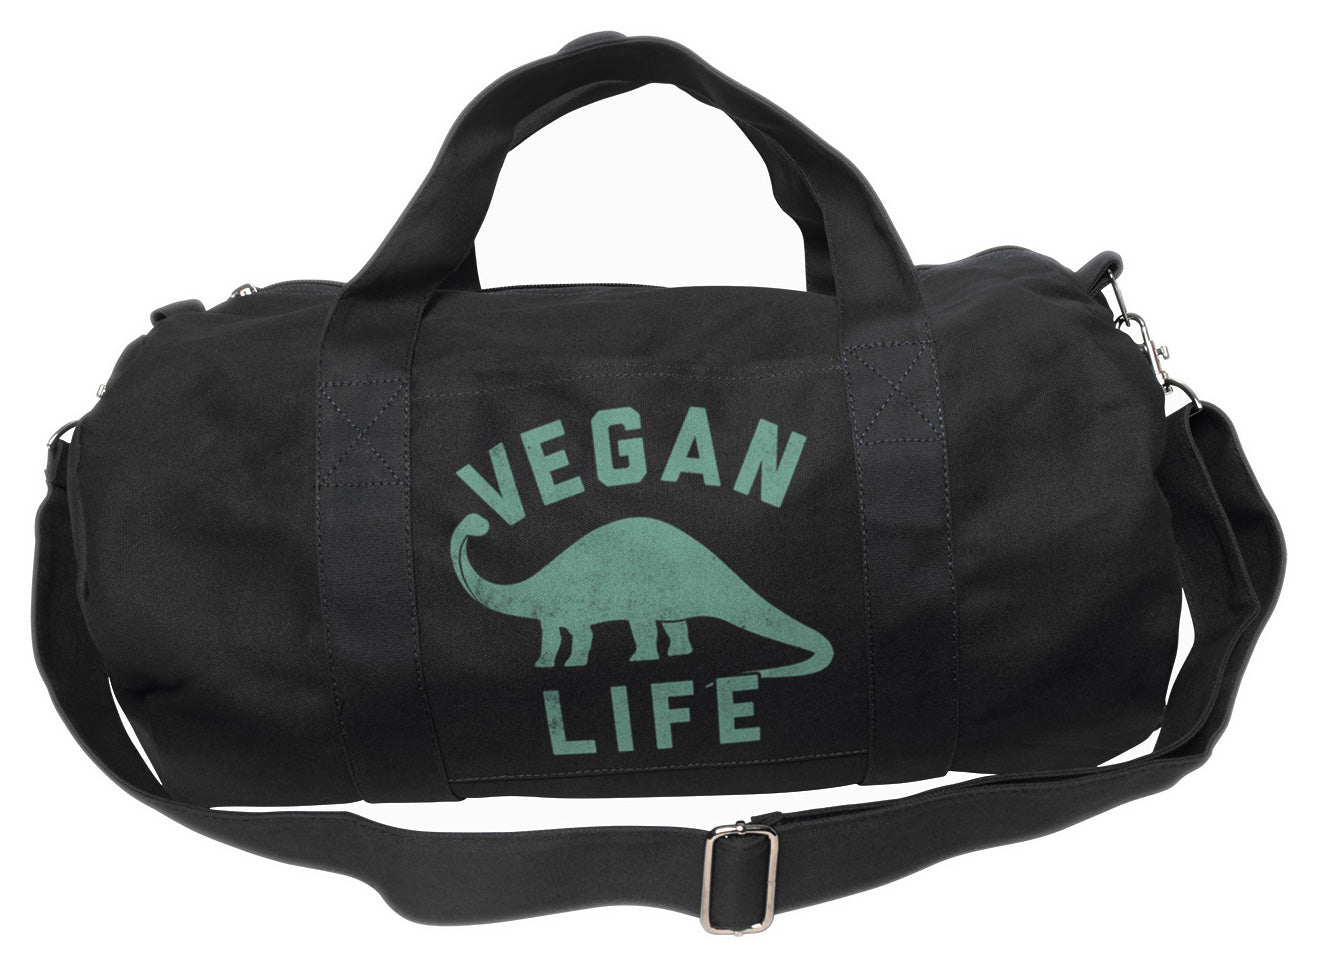 Brontosaurus Vegan Life Duffel Bag